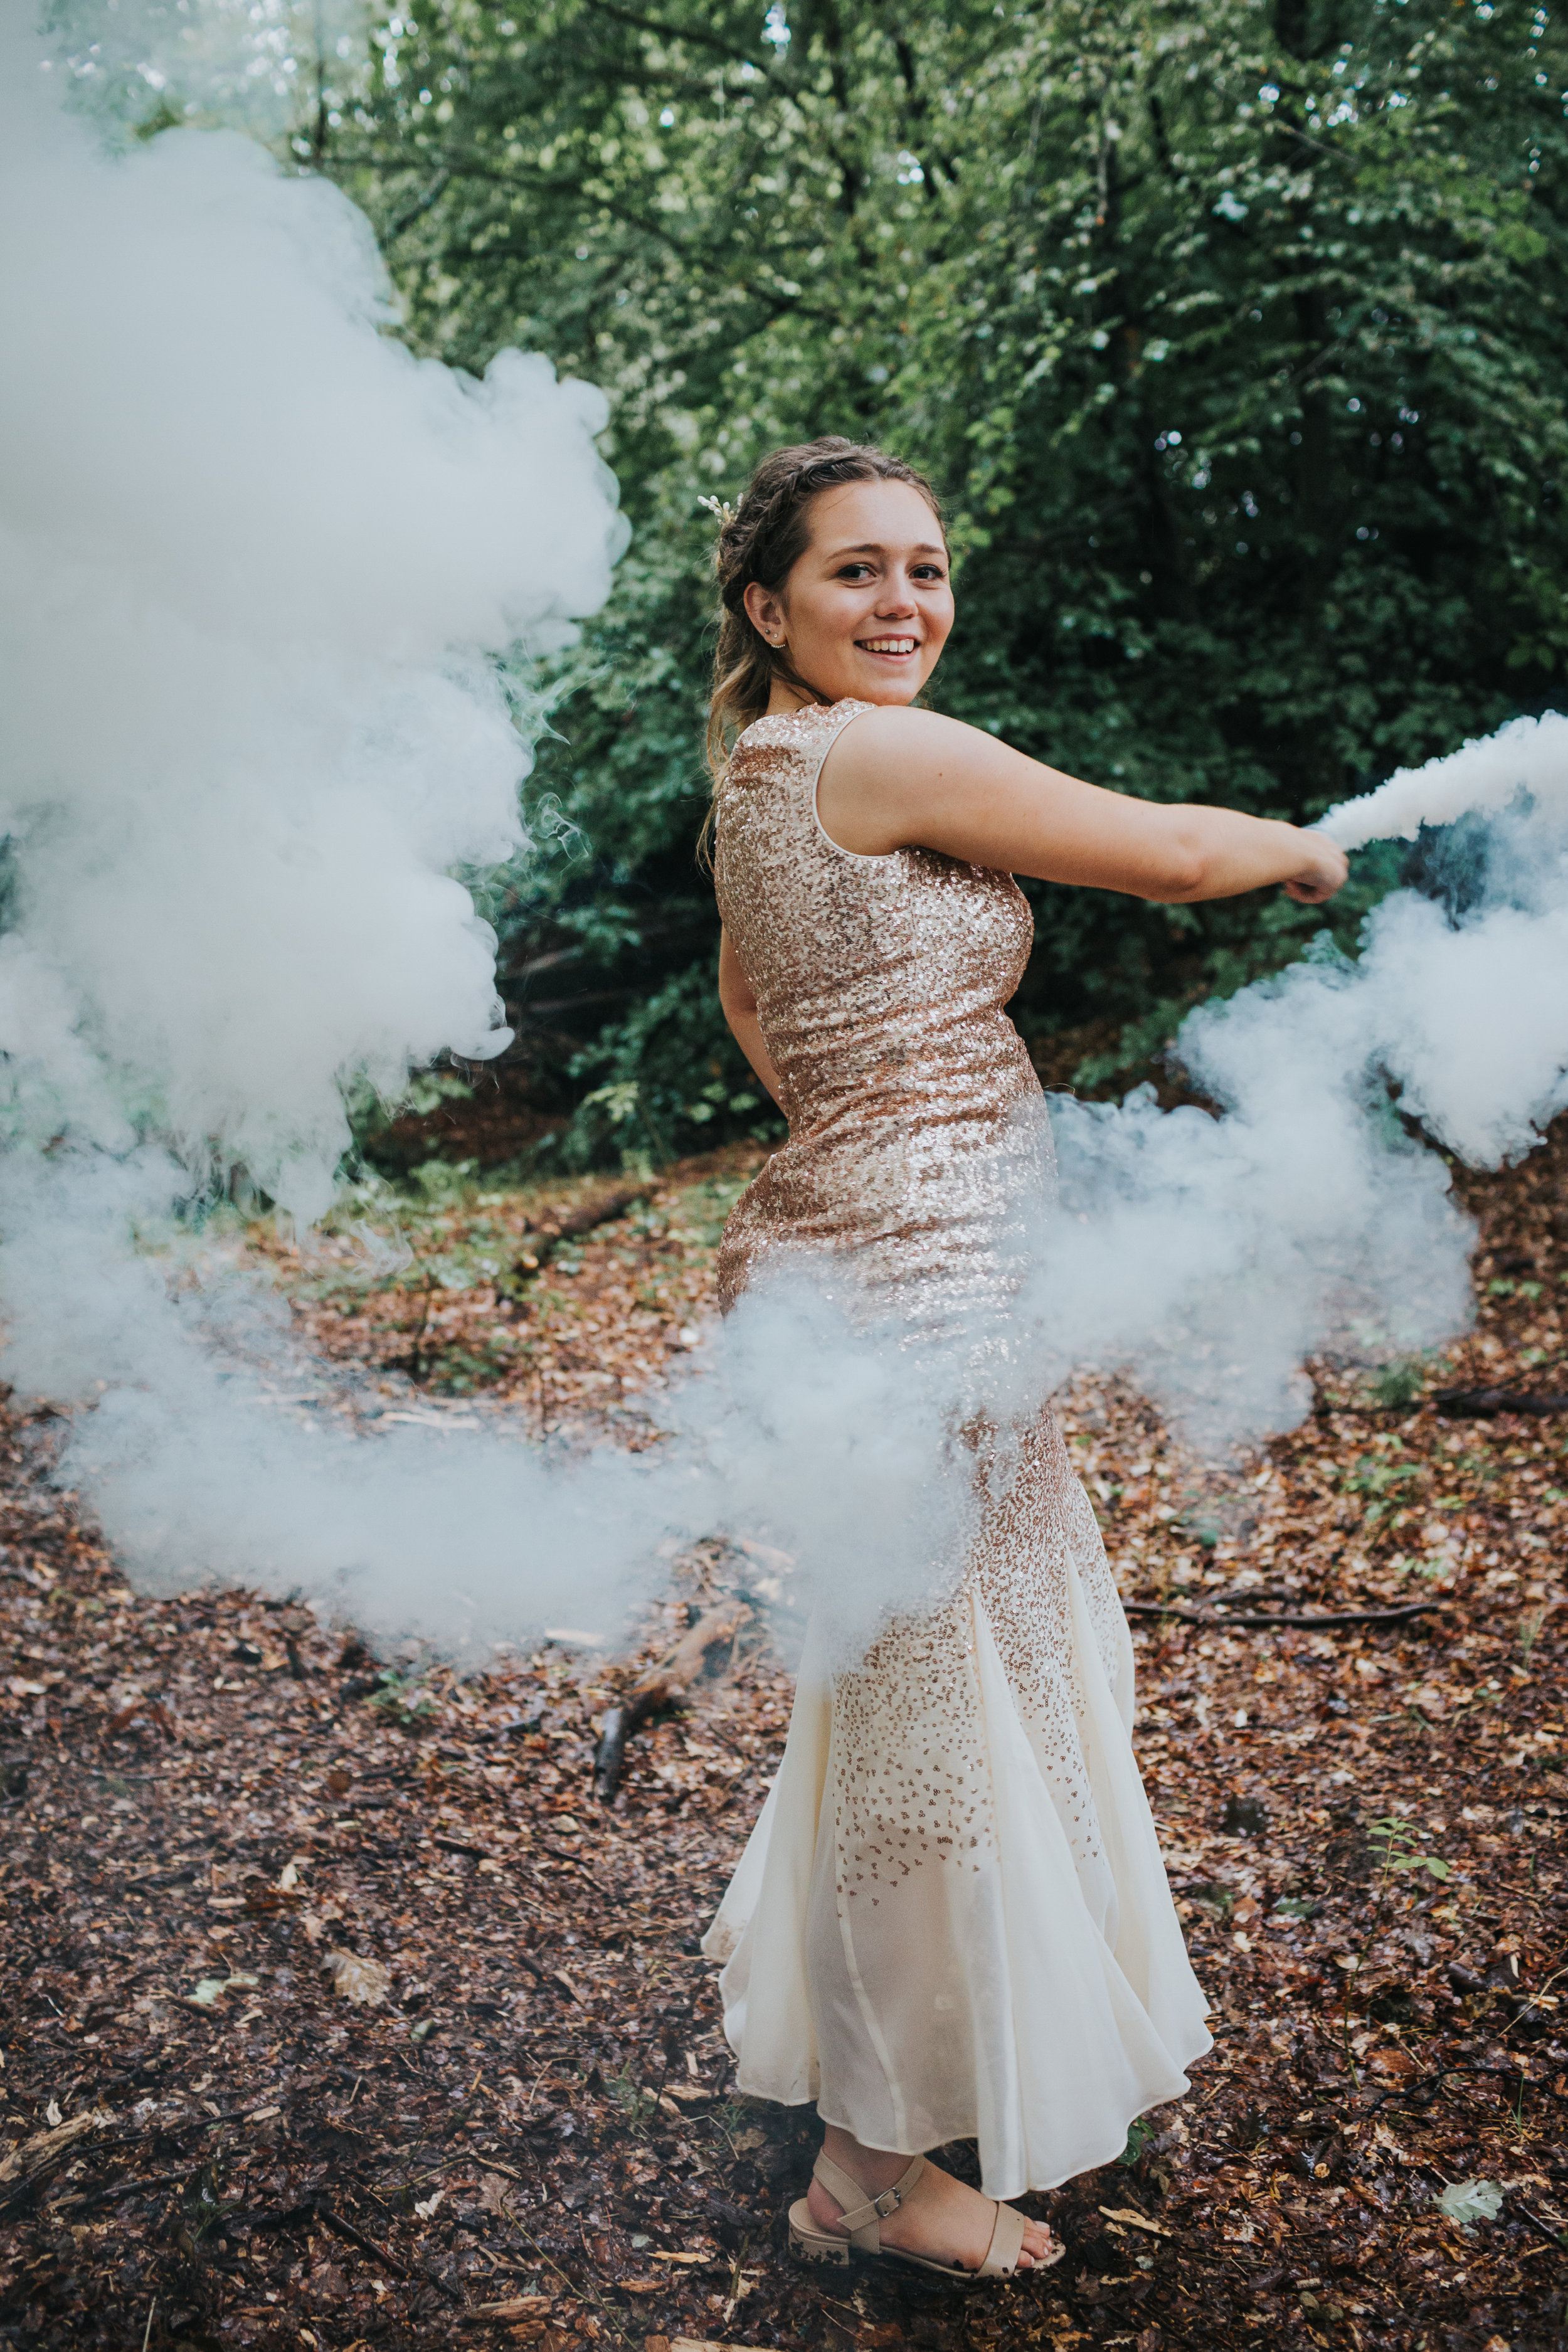 Bridesmaid swirls smoke bomb around. 